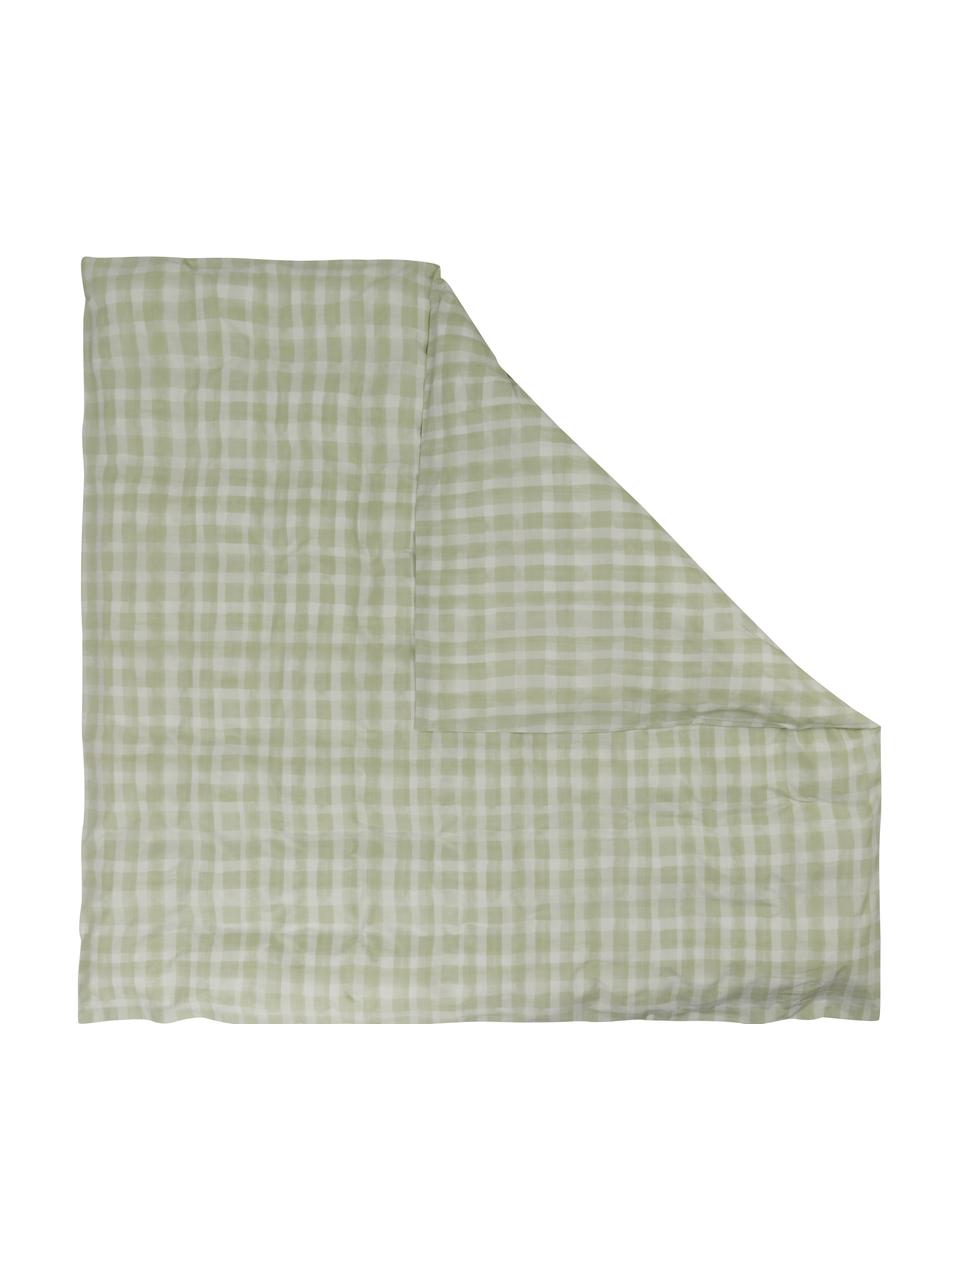 Housse de couette design en percale de coton Milène de Candice Gray, Vert menthe, 200 x 200 cm